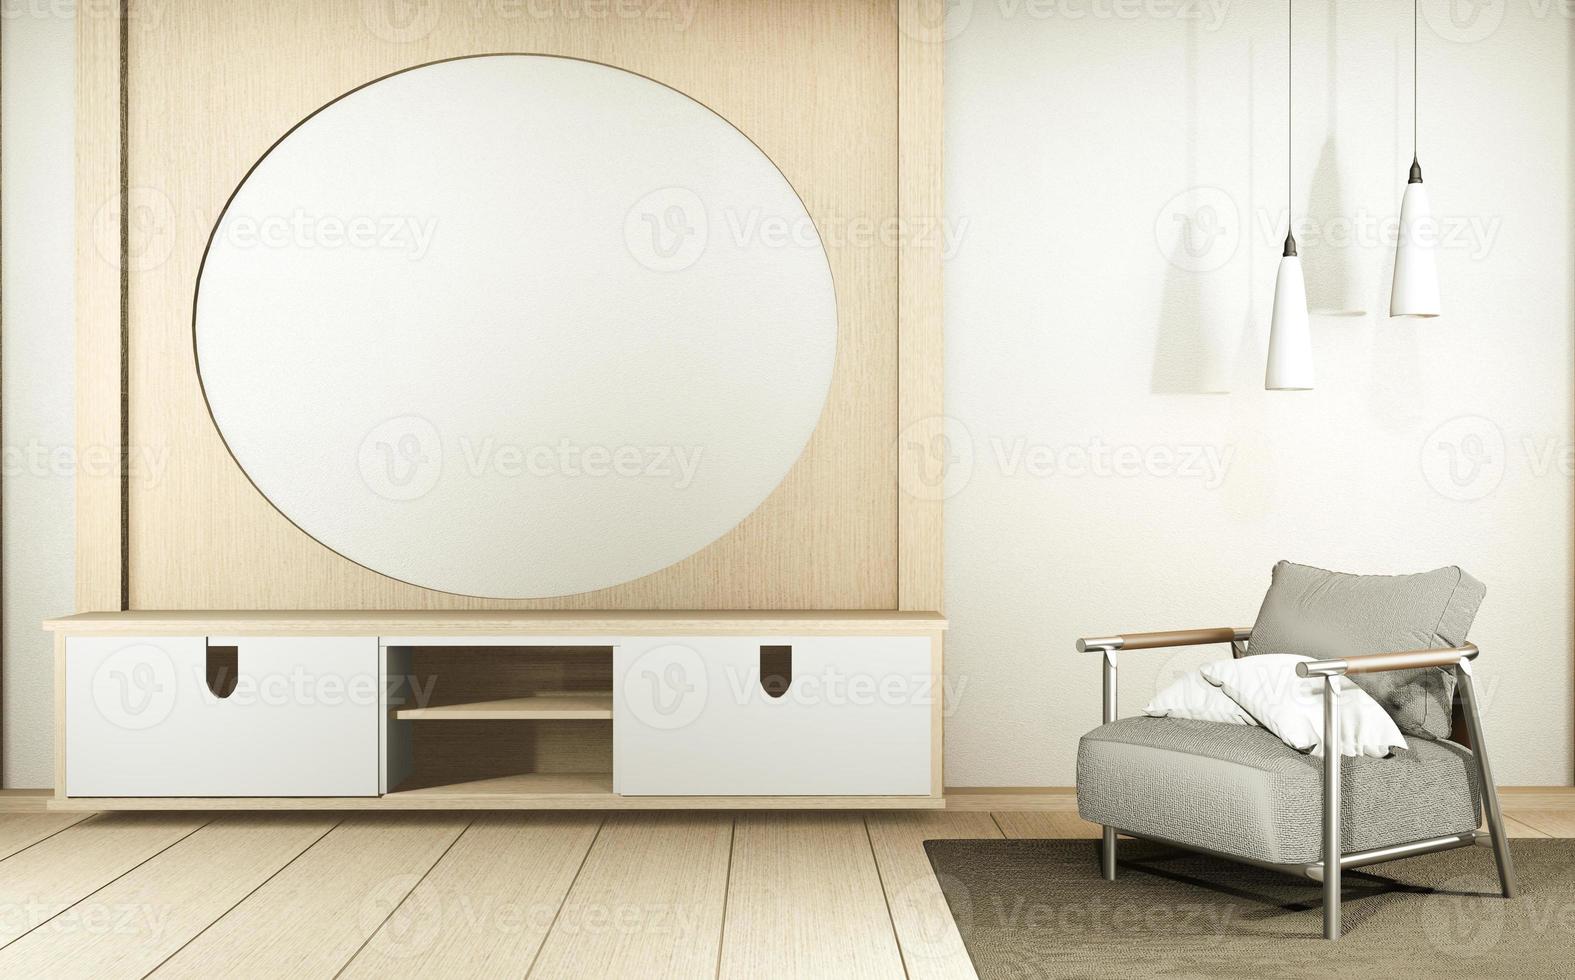 Schrankfernseher im weißen, leeren Innenraum im japanischen Stil, 3D-Rendering foto